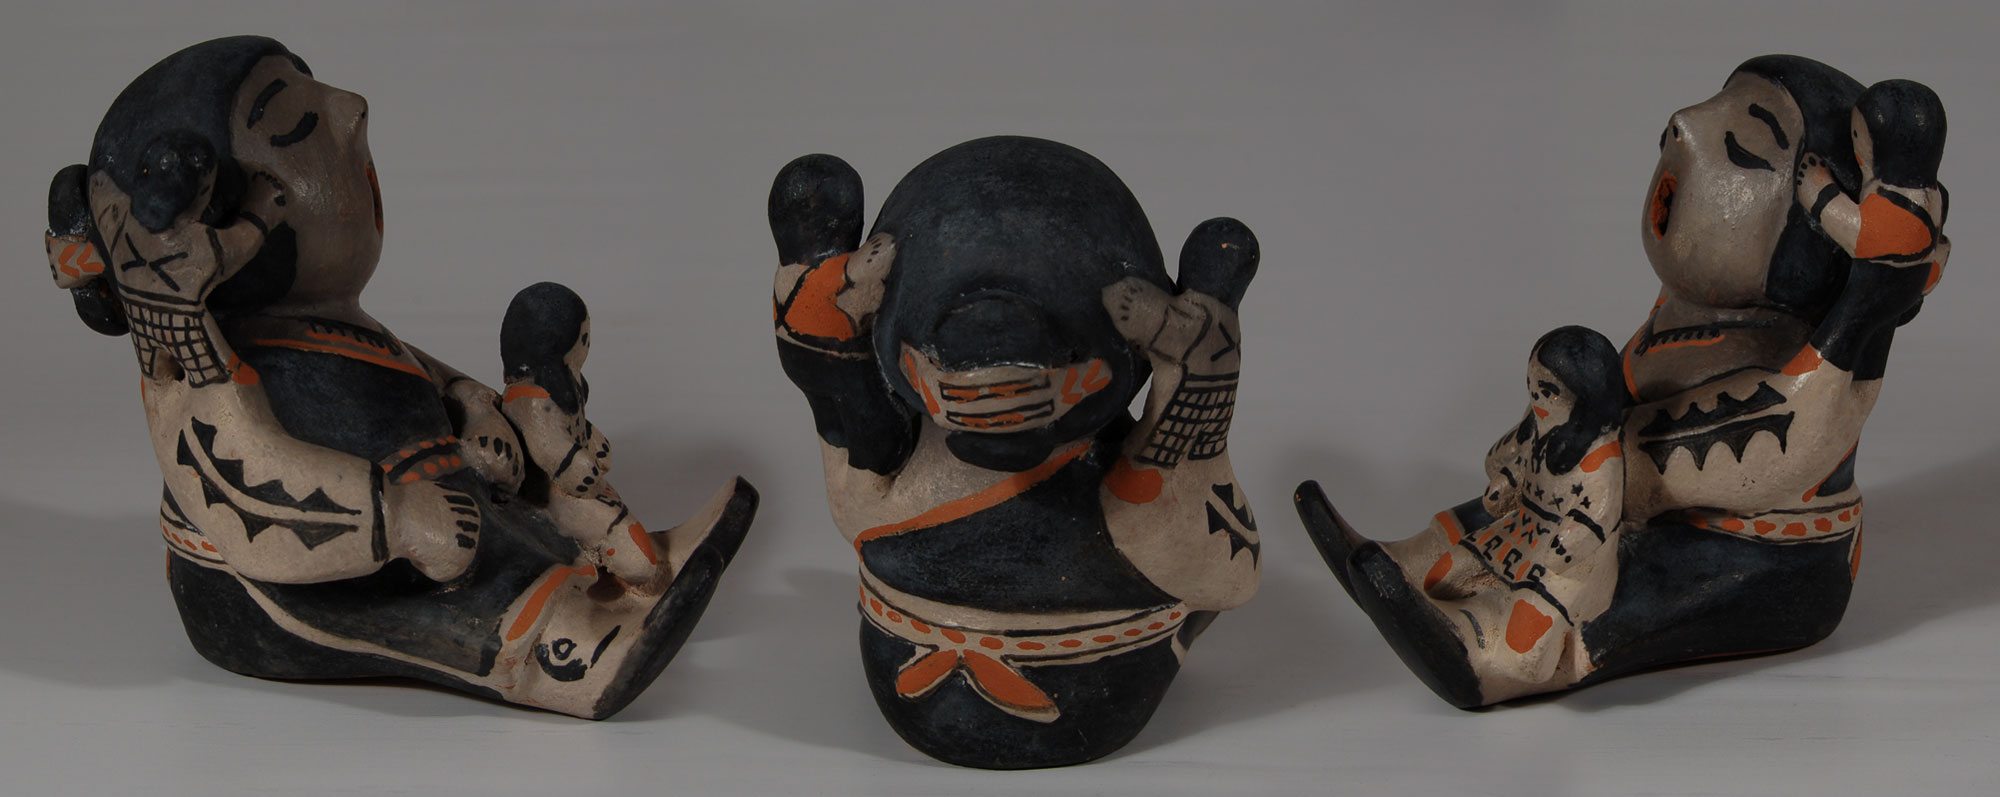 Cochiti Pueblo Female Storyteller Figurine with 3 Children - Adobe ...